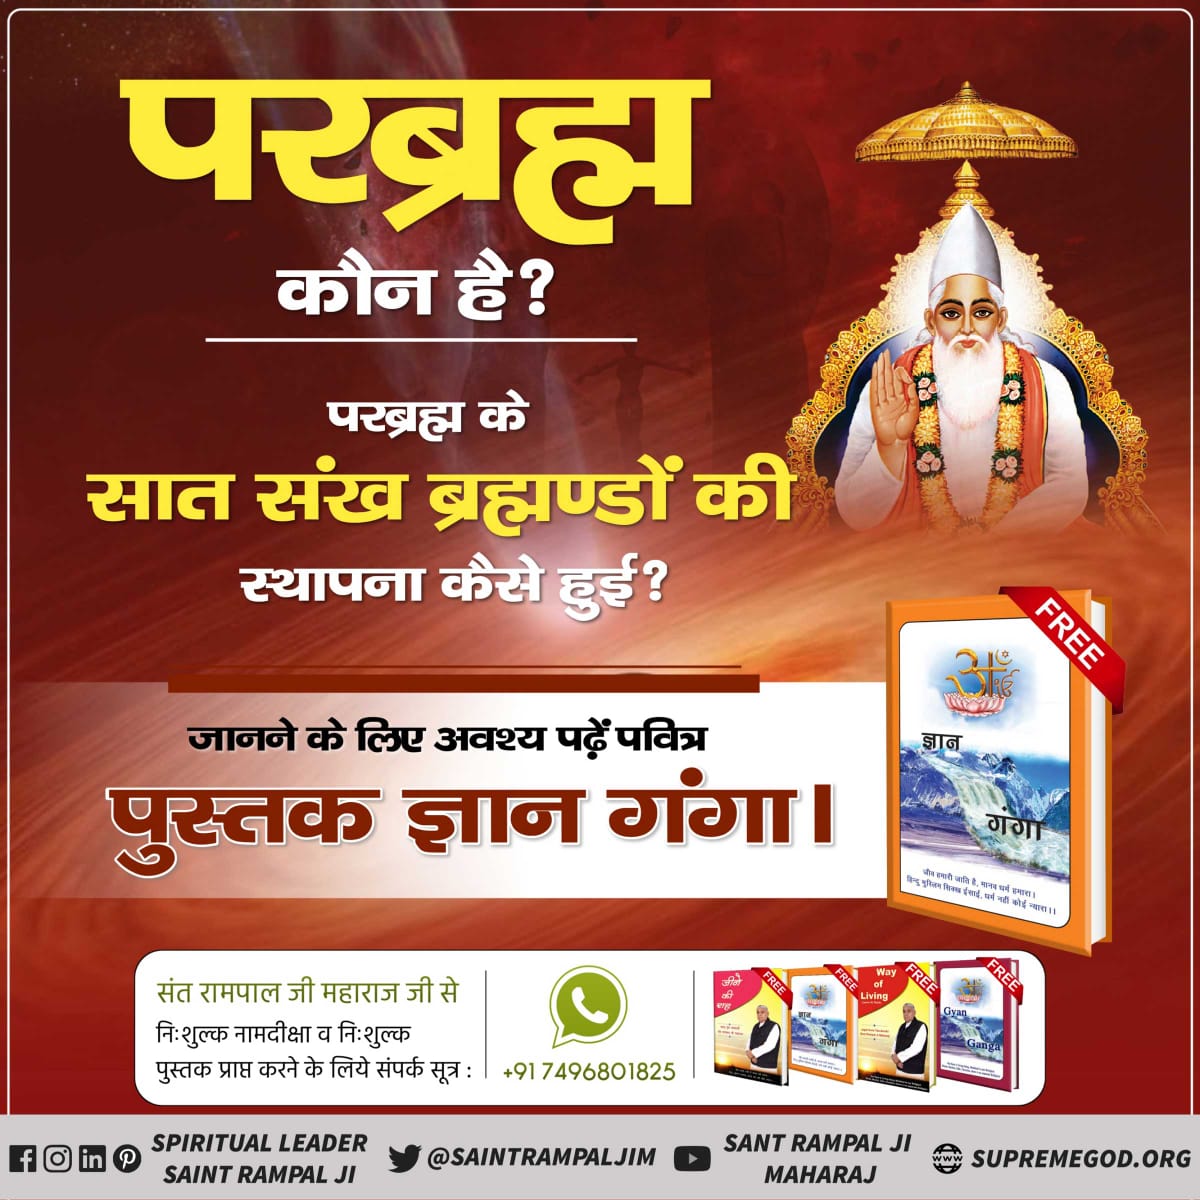 #सुनो_गीता_अमृत_ज्ञान
परब्रह्म के सात शंख ब्रह्माण्डों की स्थापना
ऑडियो के माध्यम से
Audio Book सुनने के लिए Download करें Official App 'Sant Rampal Ji Maharaj'